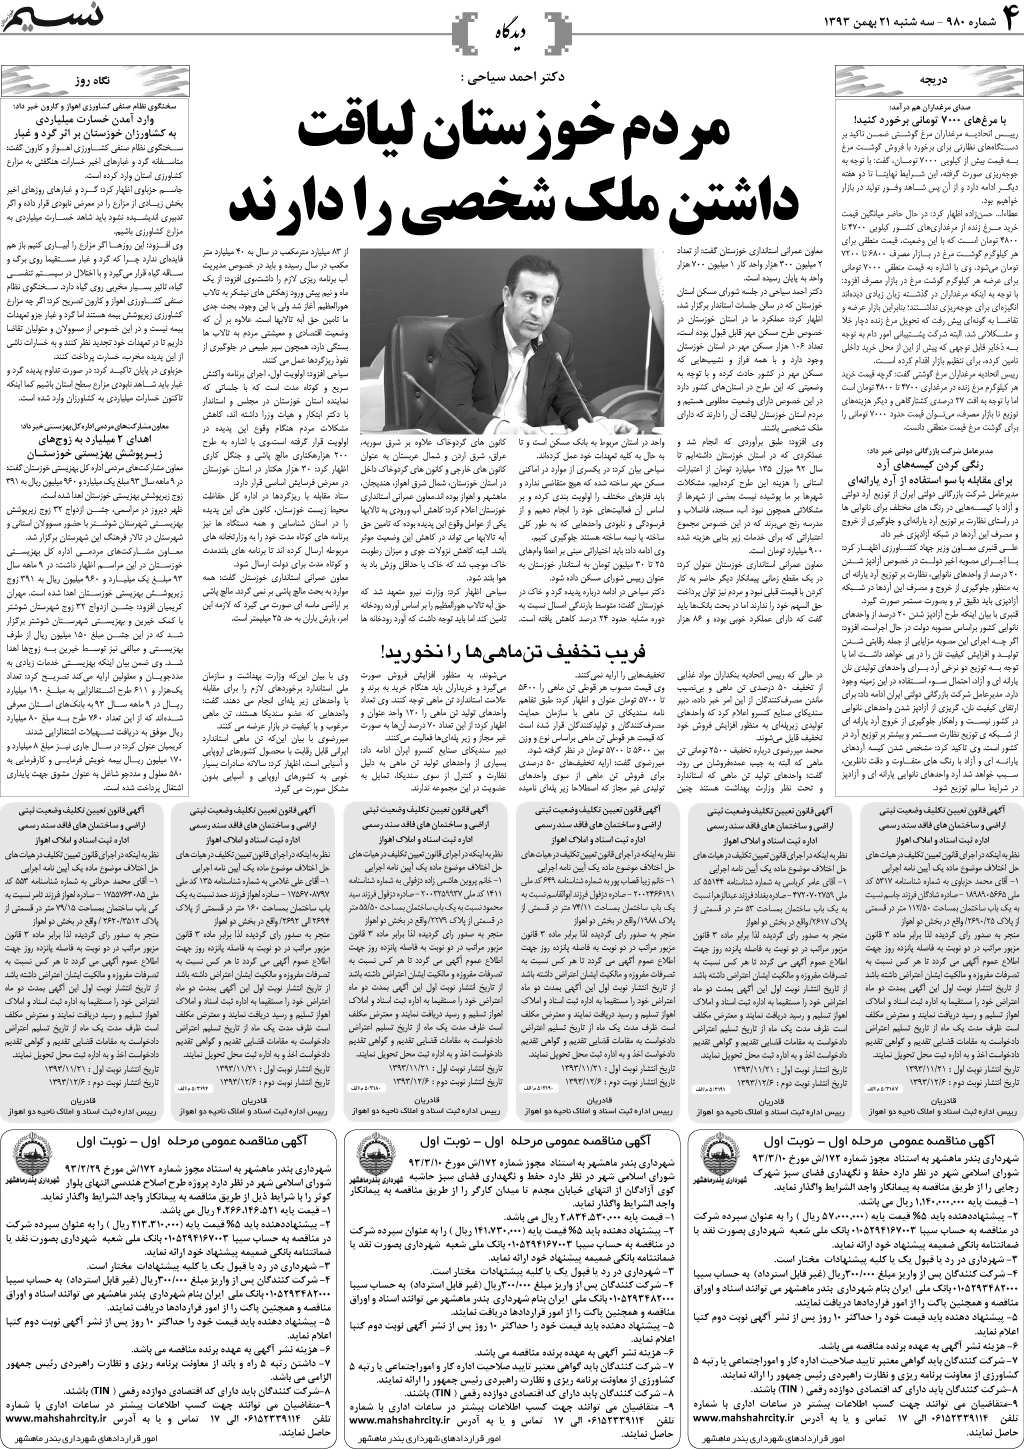 صفحه دیدگاه روزنامه نسیم شماره 980